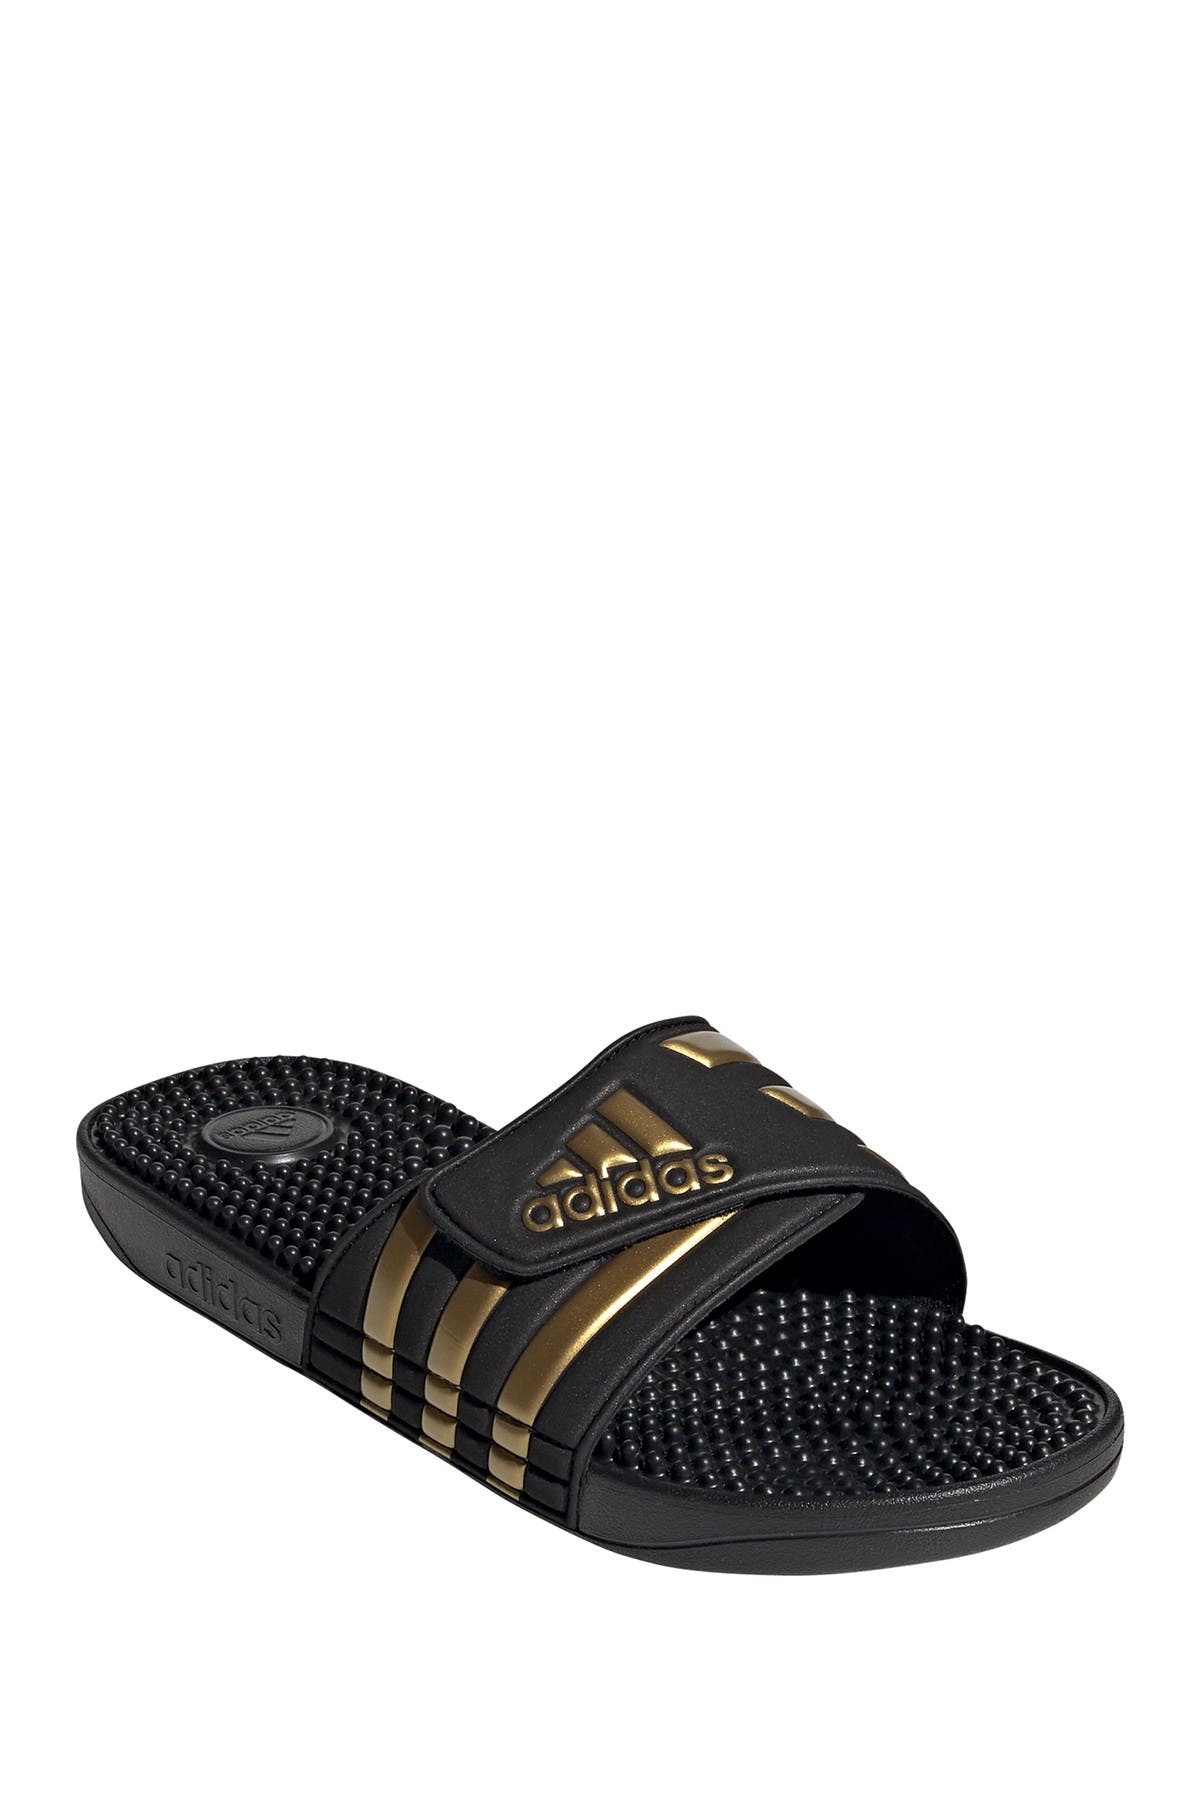 adidas adissage slide sandal